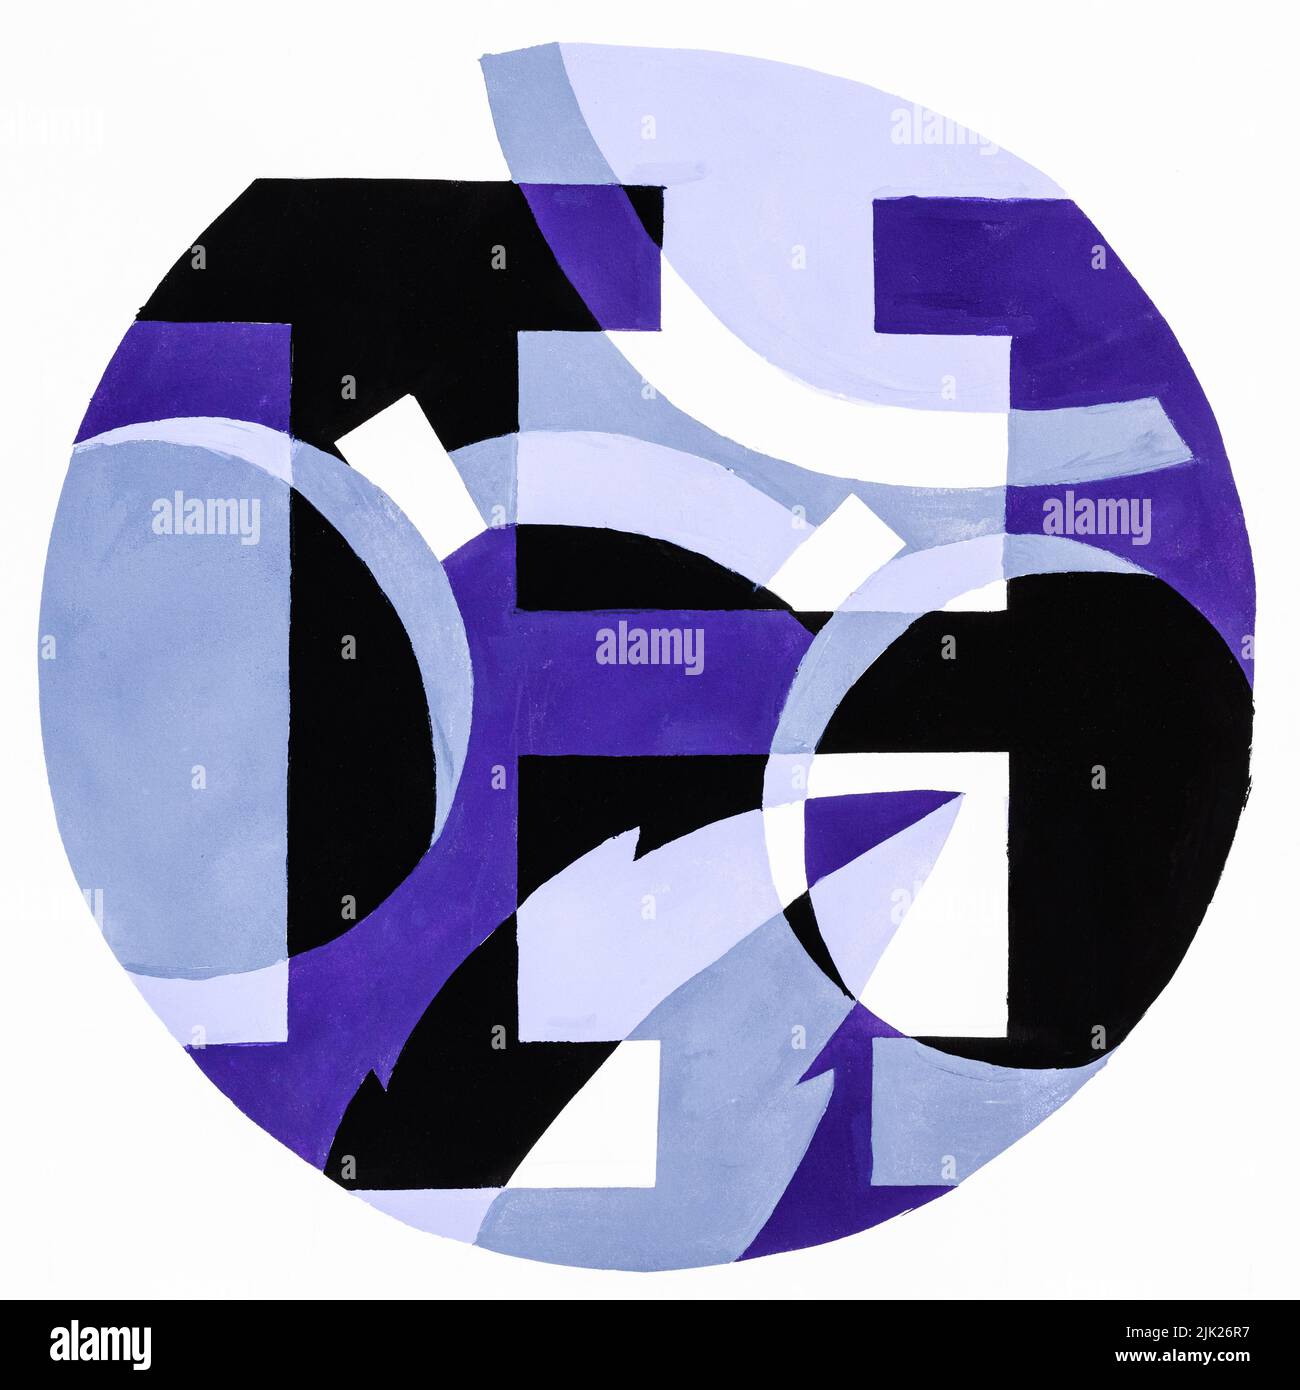 Composición redonda abstracta con letra H, hoja de árbol y gafas pintadas a mano con pinturas temple azul, violeta y negro sobre papel blanco Foto de stock